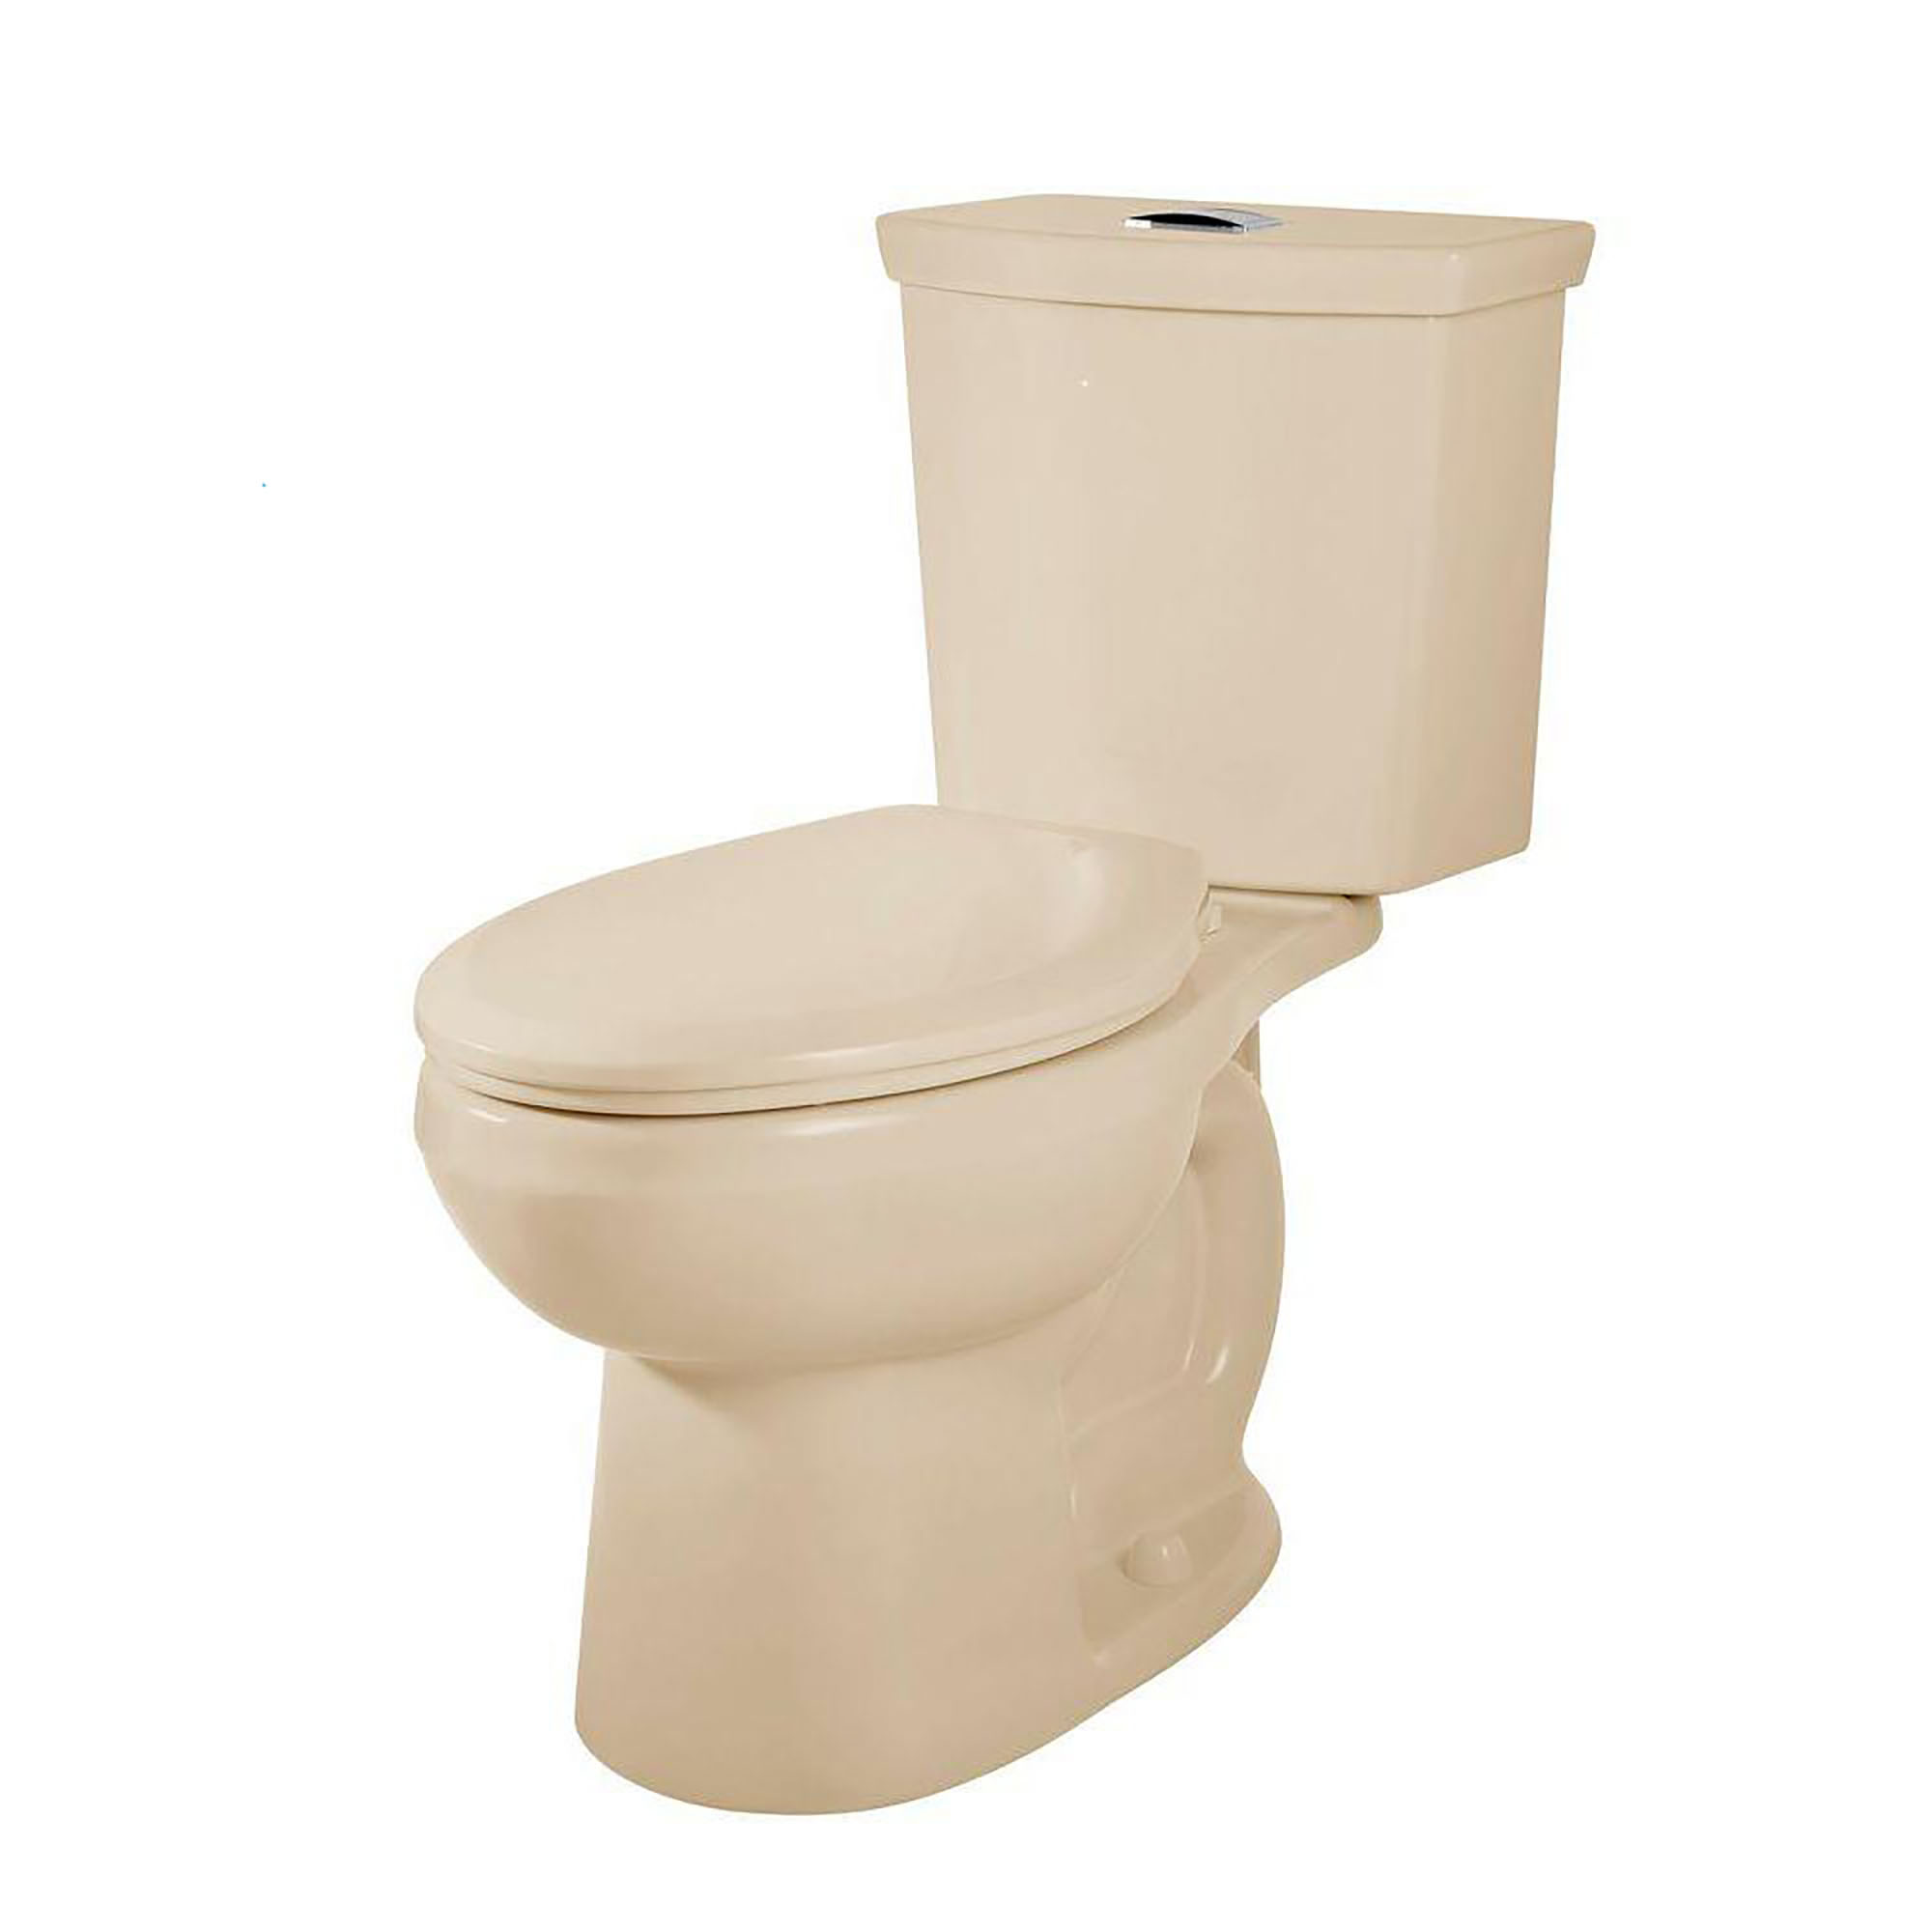 Toilette H2Option, 2 pièces, chasse double 1,28 gpc/4,8 lpc et 0,92 gpc/3,5 lpc, à cuvette allongée à hauteur régulière, sans siège